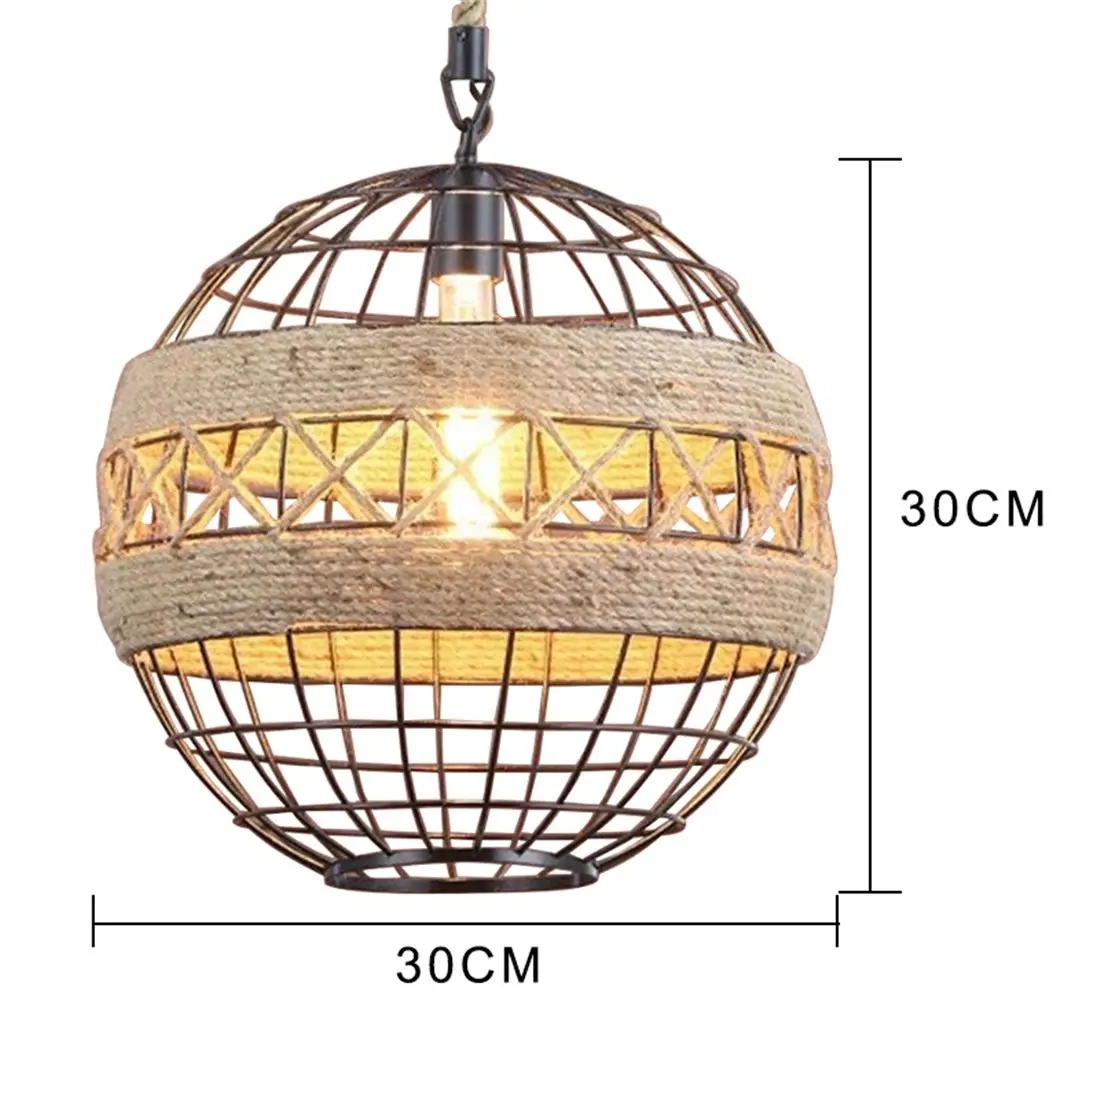 Кантри Ретро тесьма промышленный ветер люстра интернет кафе ресторан кафе бар мяч лампы с уникальным стилем